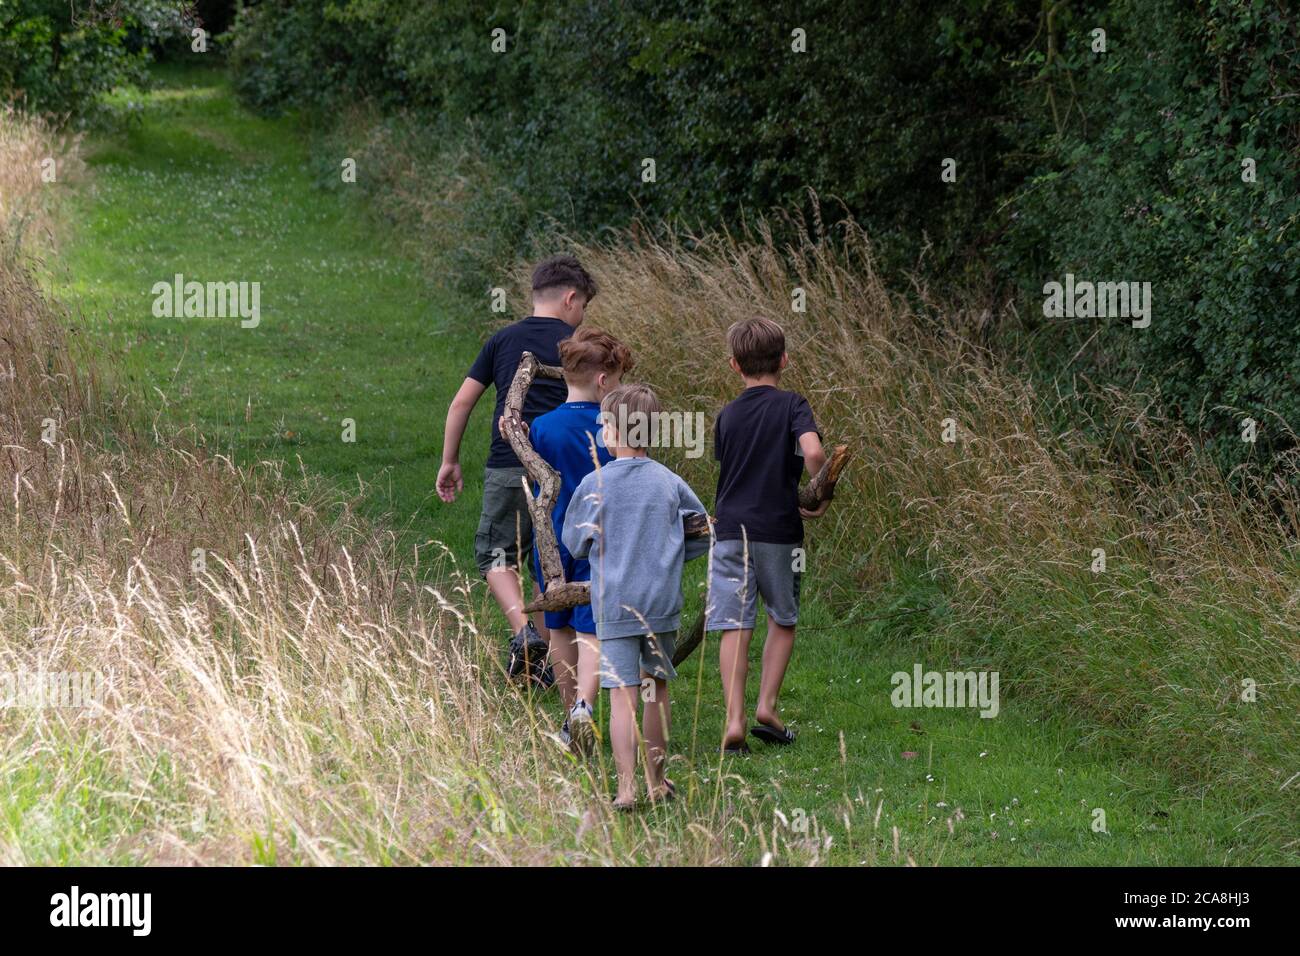 Quattro ragazzi in gioco, con un grande ramo, in estate in un parco di campagna, Regno Unito Foto Stock